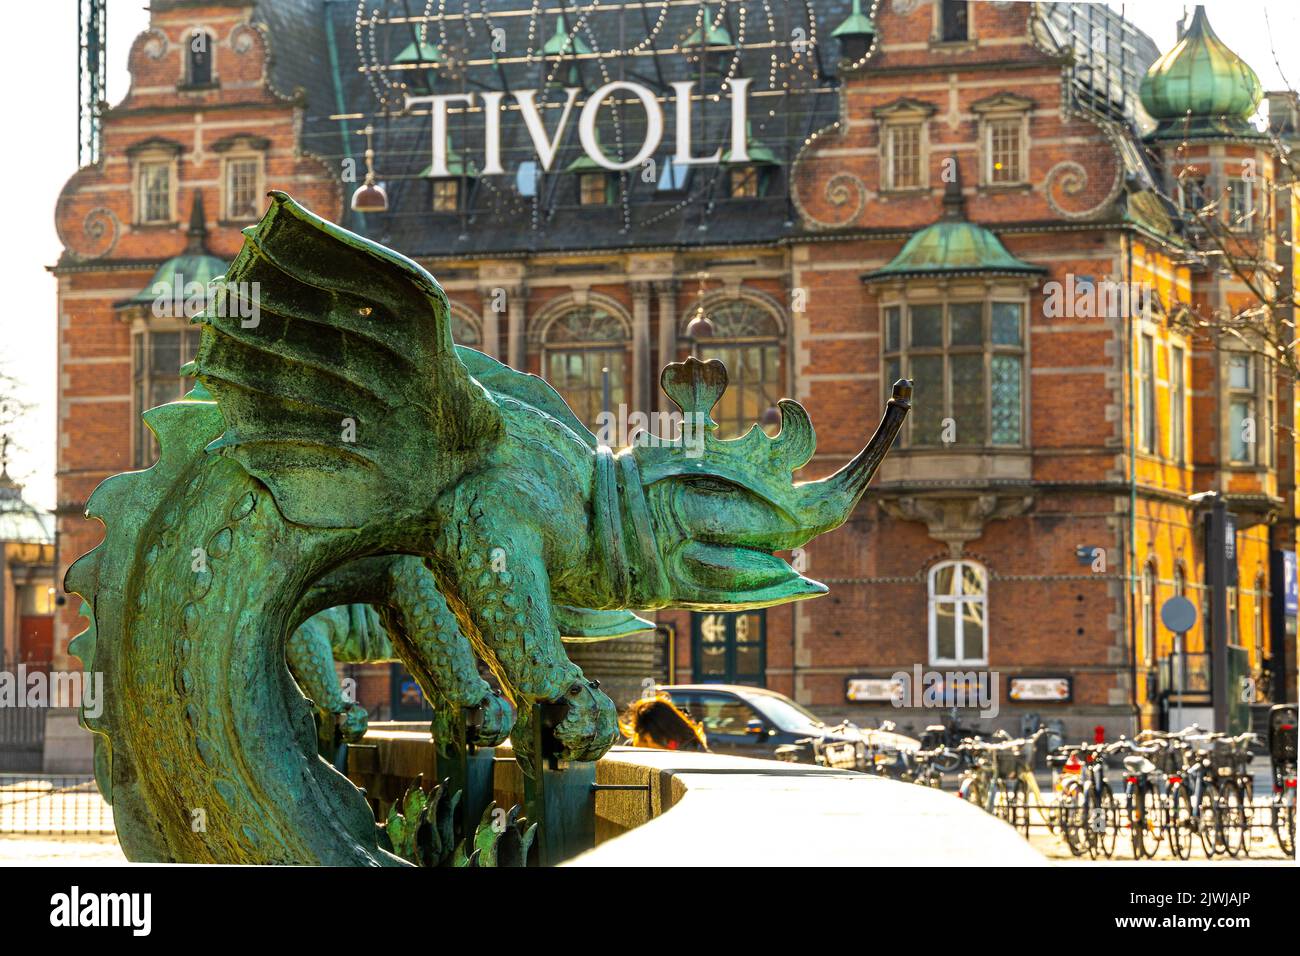 Statua di bronzo raffigurante un drago chimera con uno degli ingressi al parco divertimenti dei giardini Tivoli alle sue spalle. Copenaghen, Danimarca, Europa Foto Stock